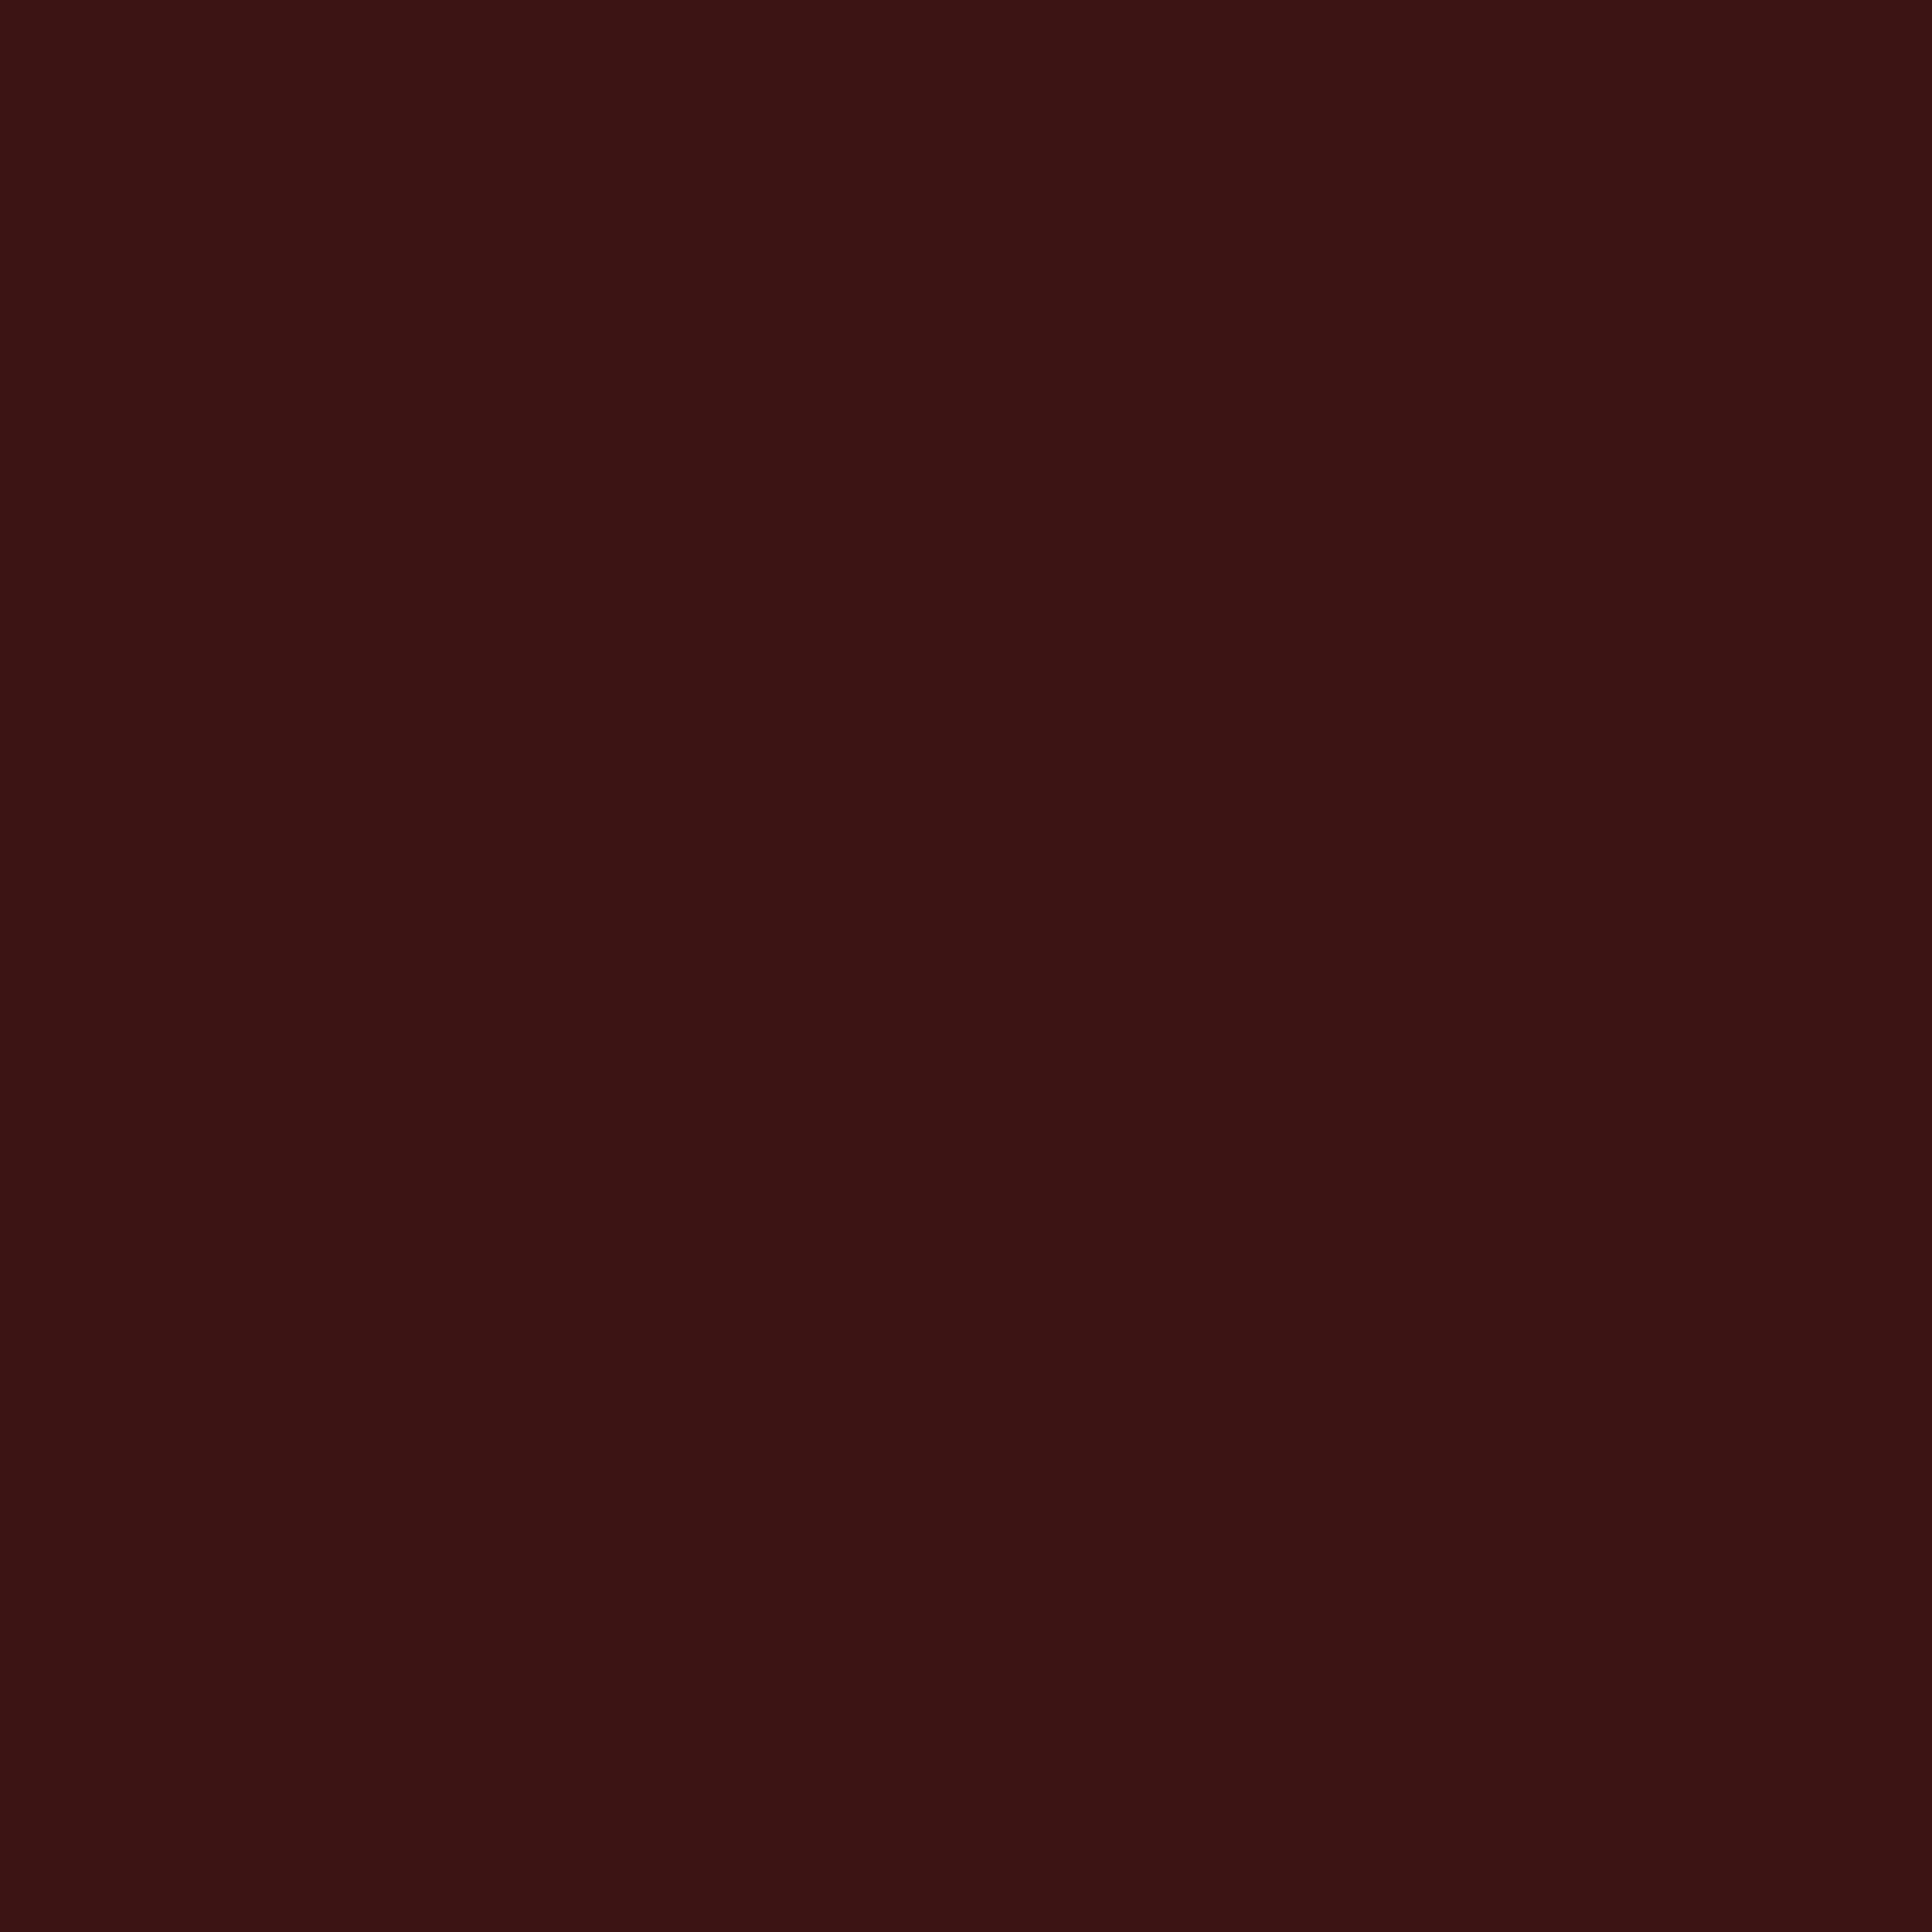 3600x3600 Dark Sienna Solid Color Background